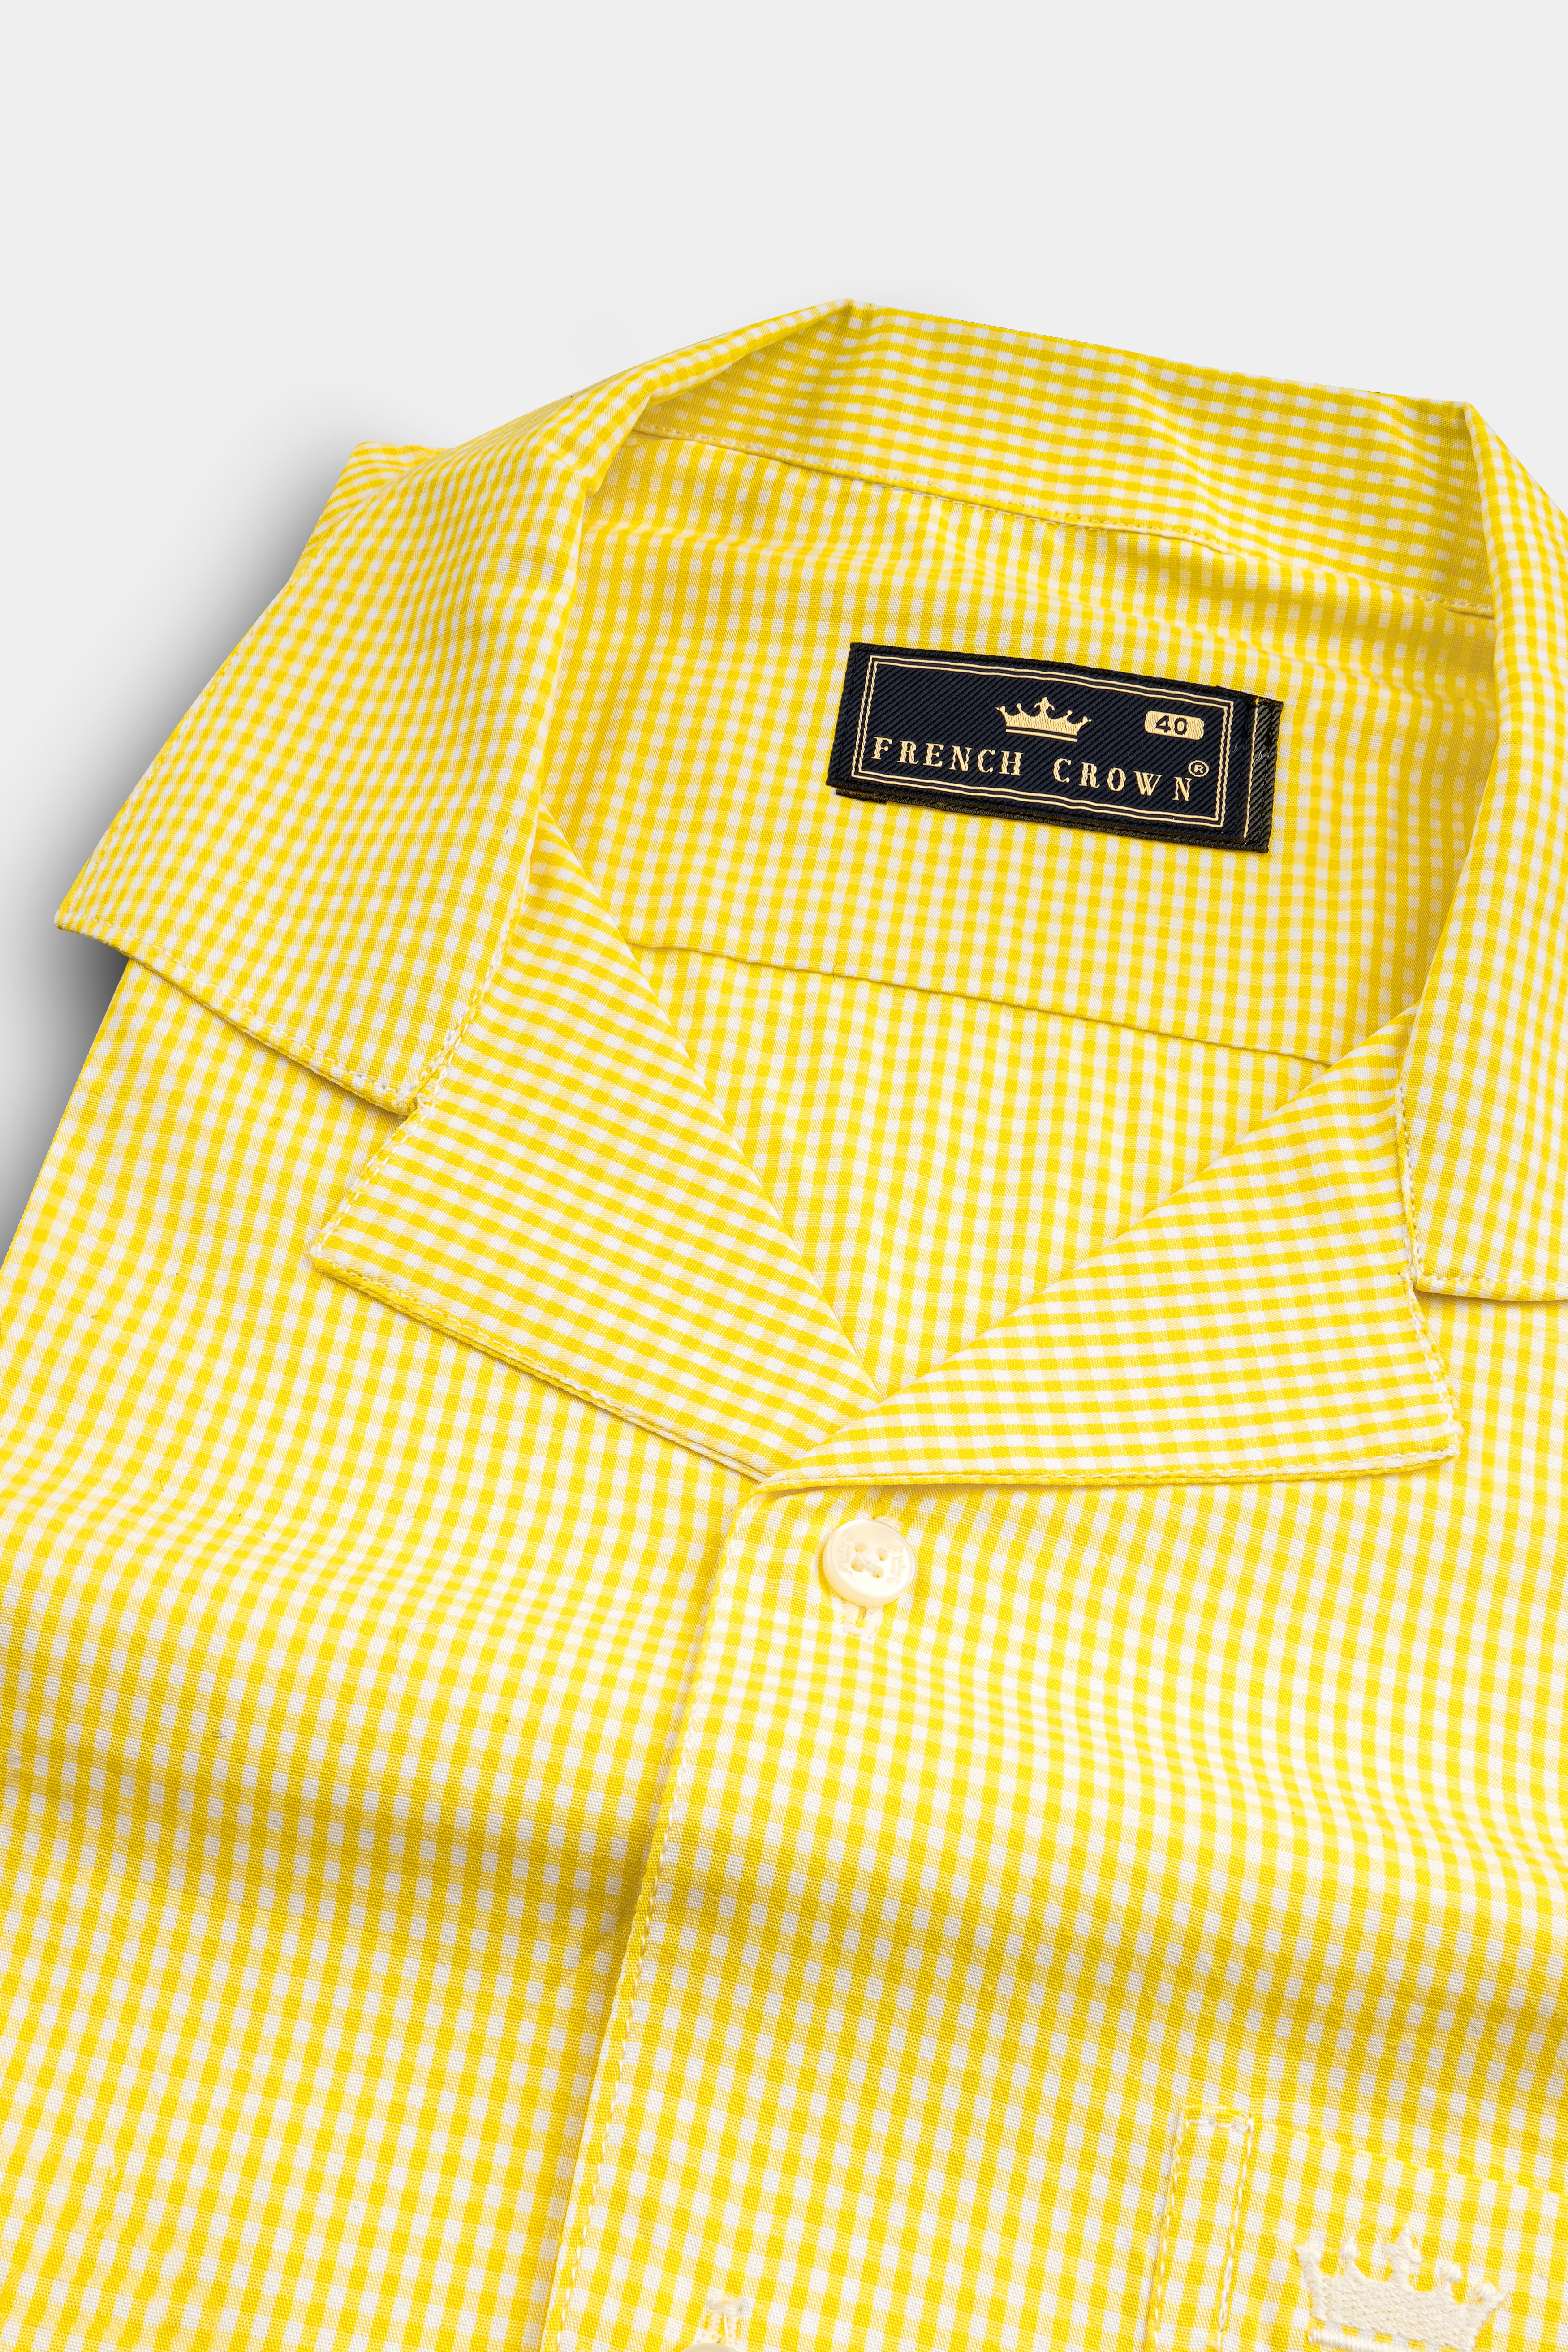 Jasmine Yellow Mini Checkered Twill Cotton Shirt